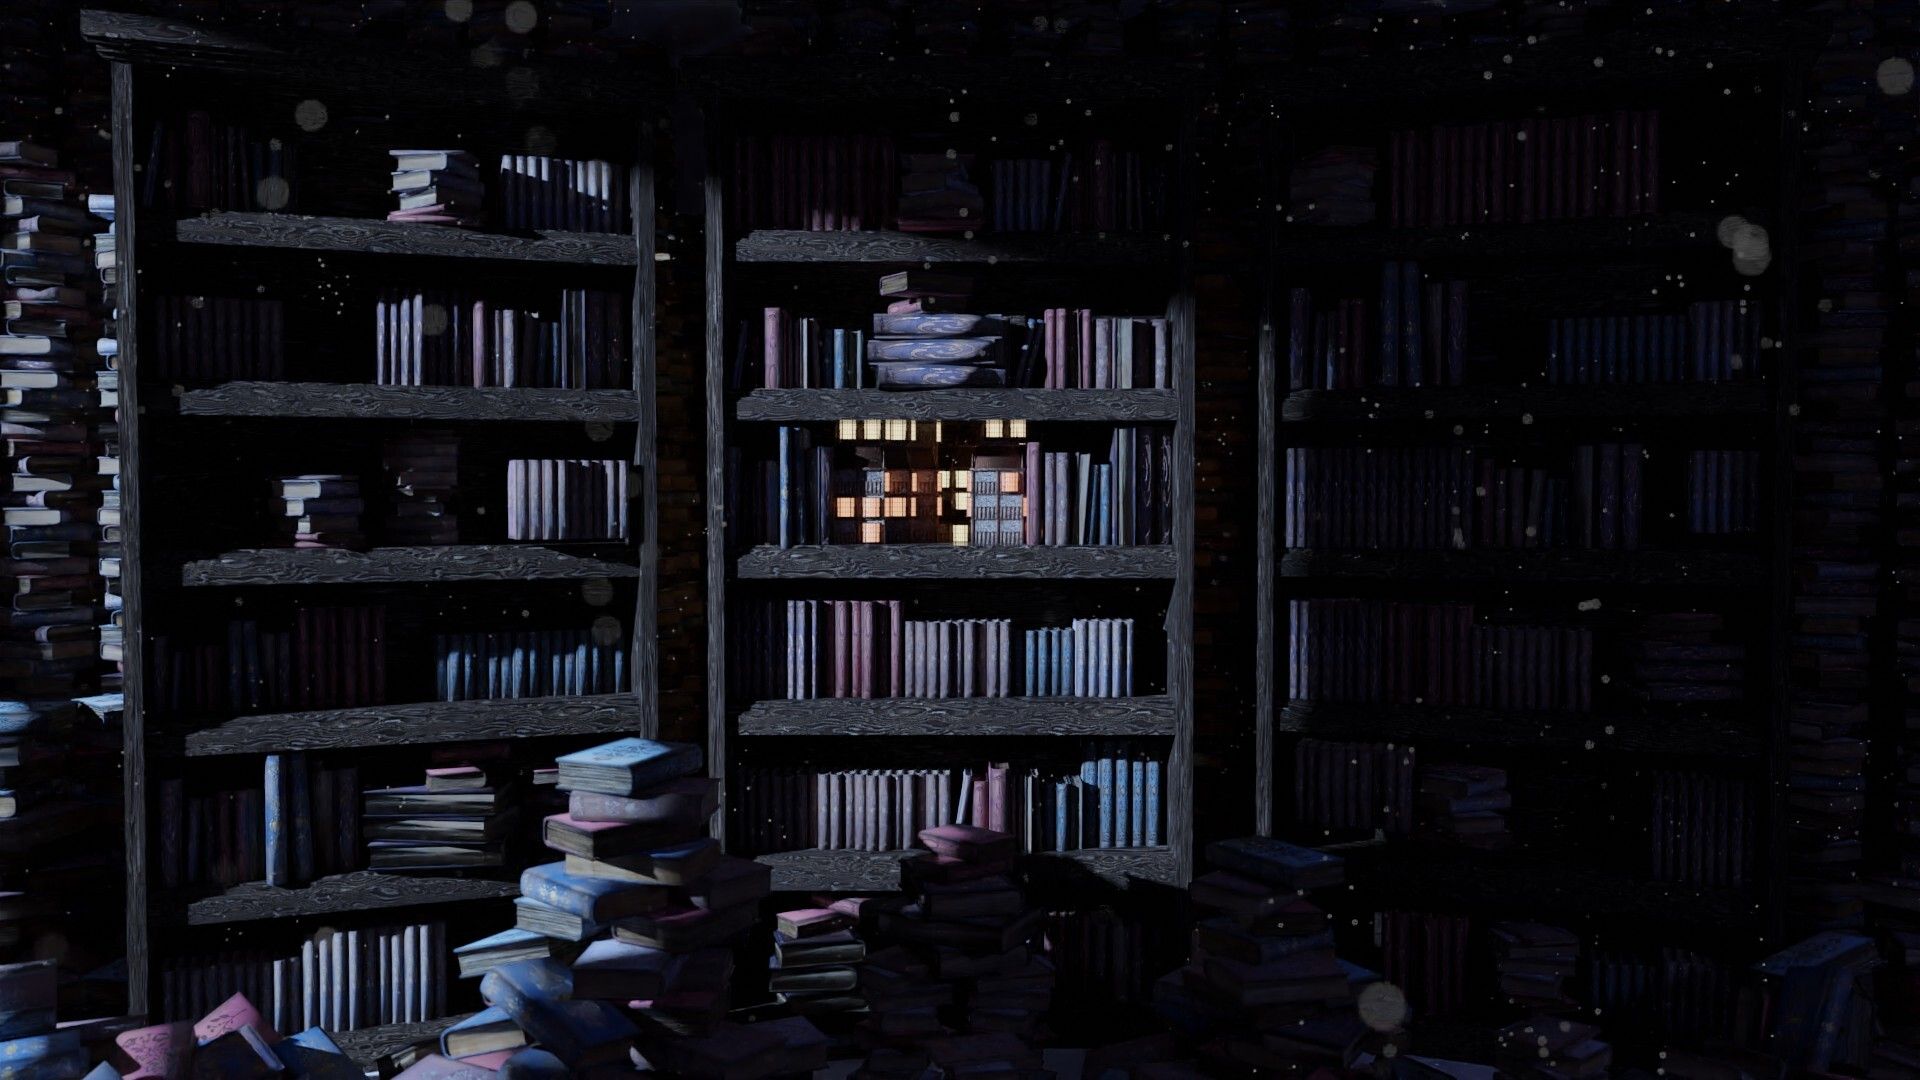 City in a bookshelf WIP Update, procedural buildings made in Houdini